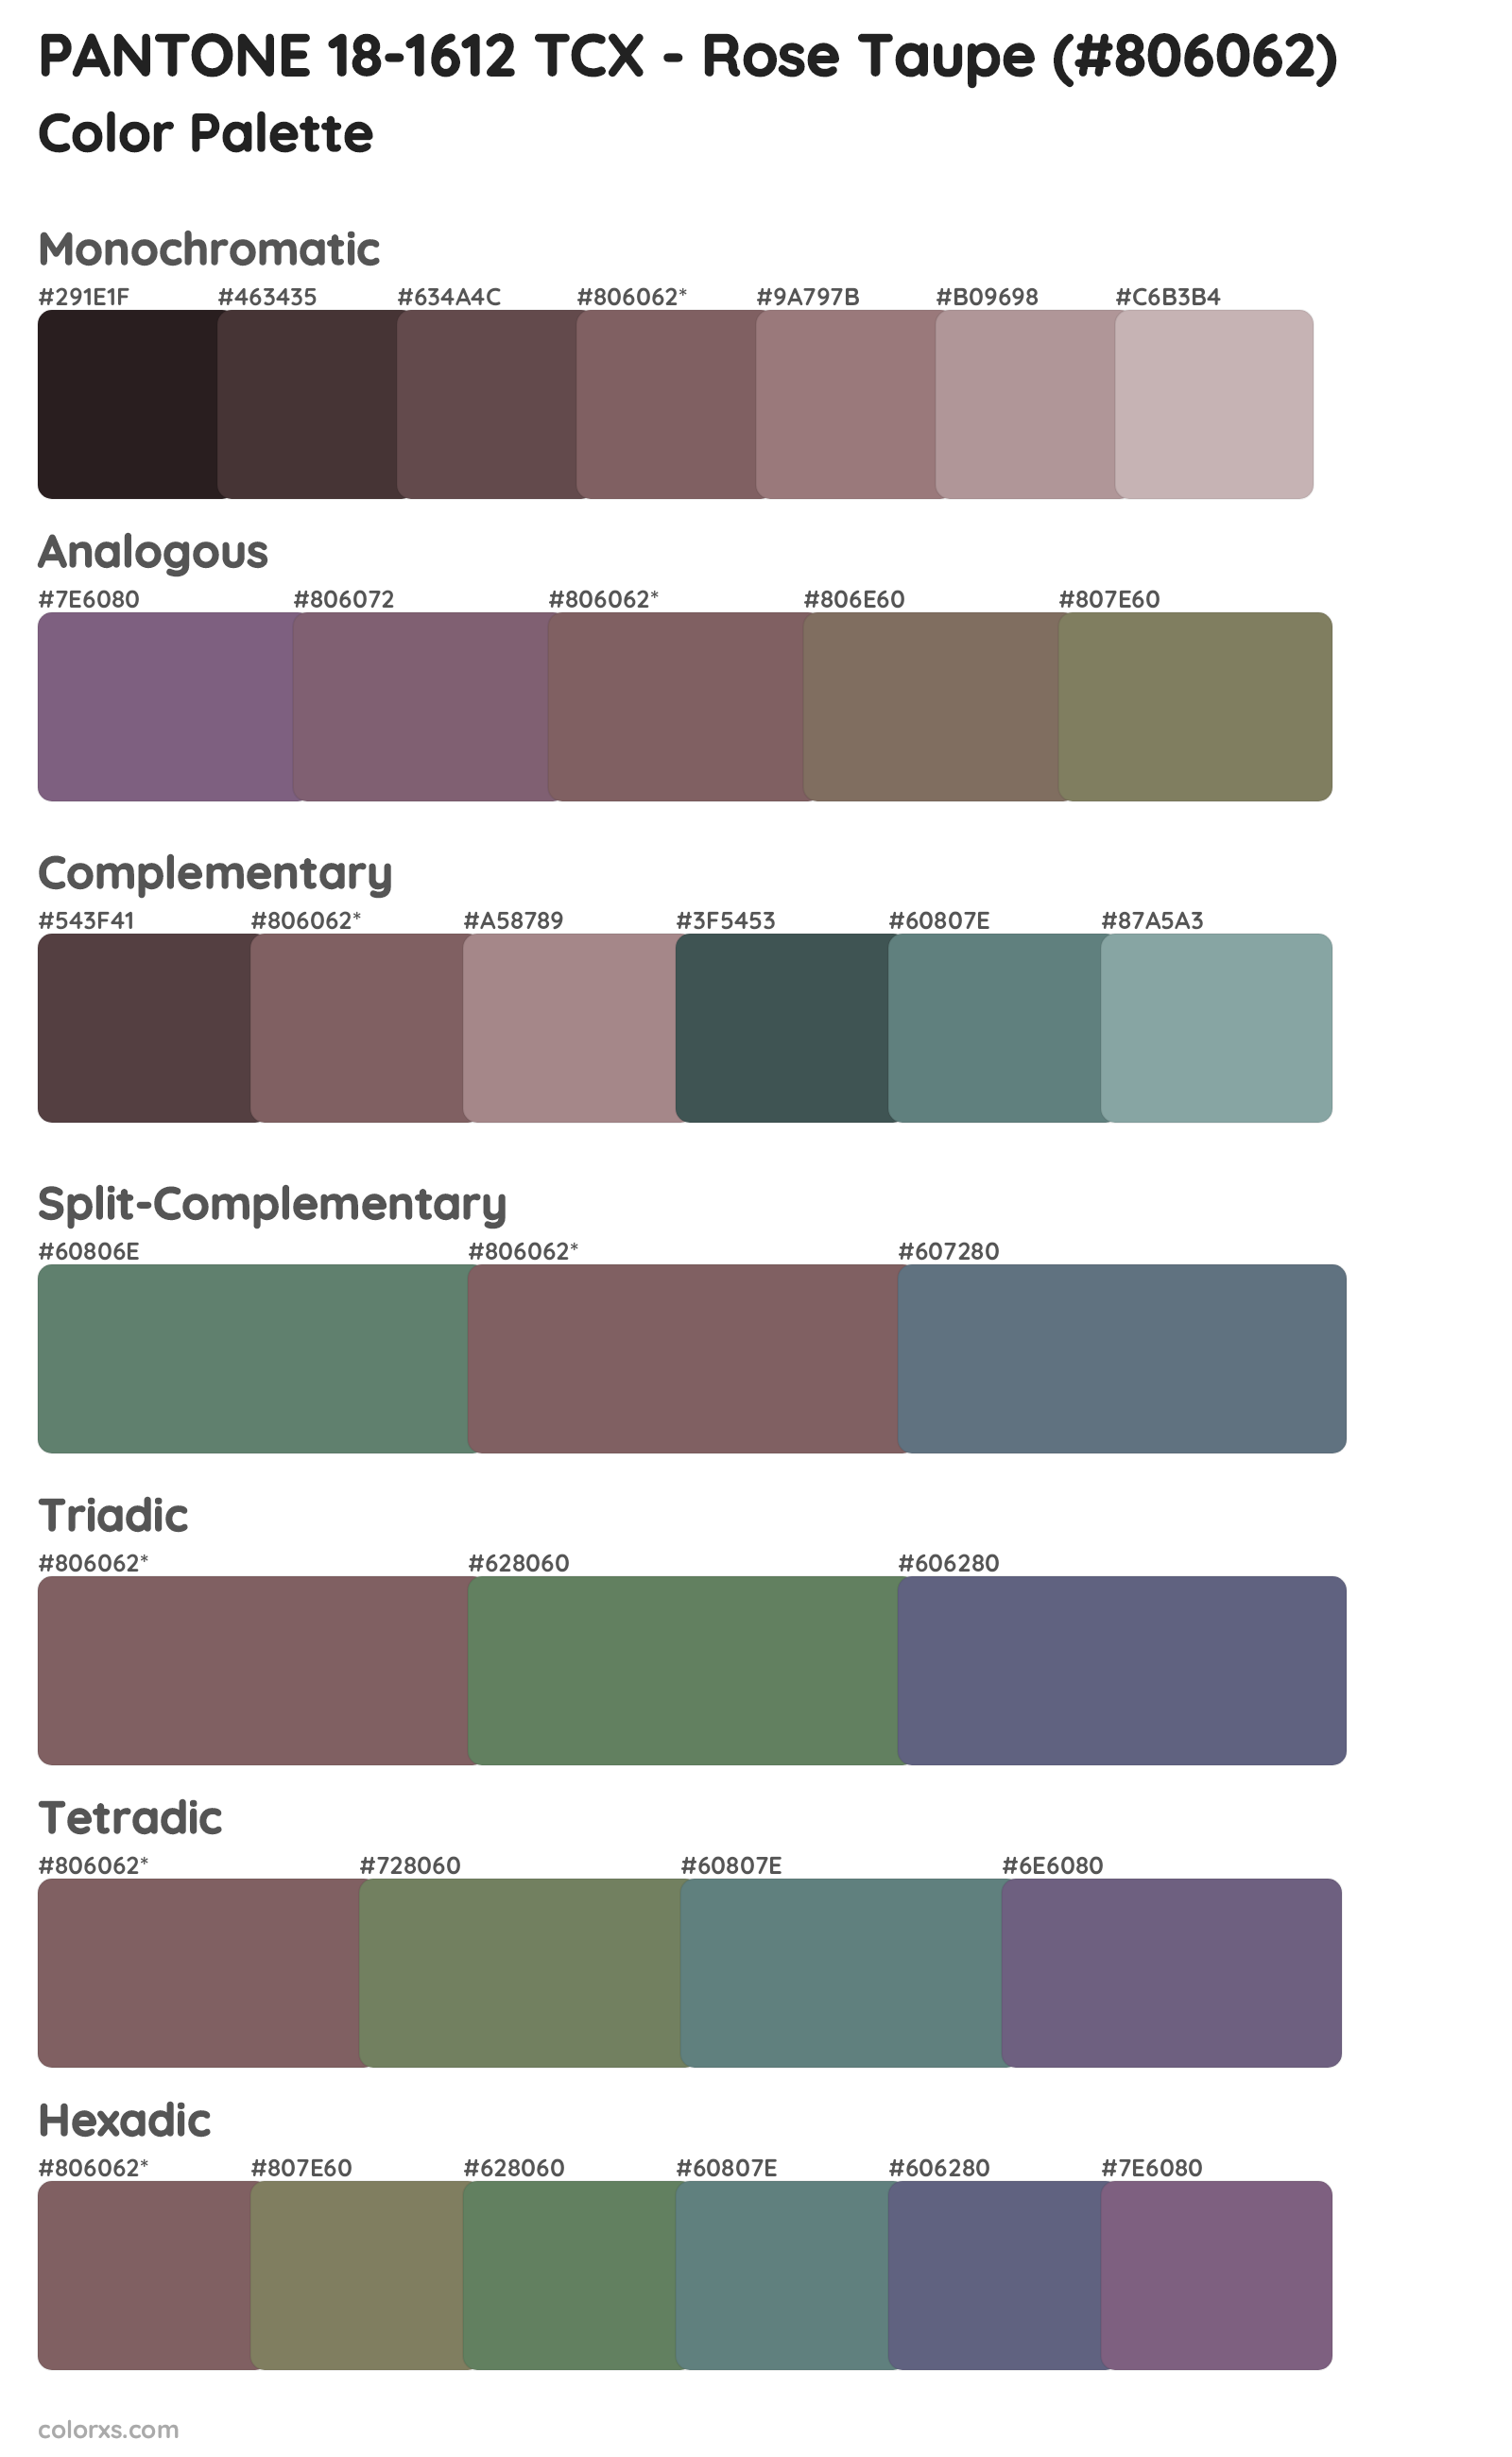 PANTONE 18-1612 TCX - Rose Taupe Color Scheme Palettes